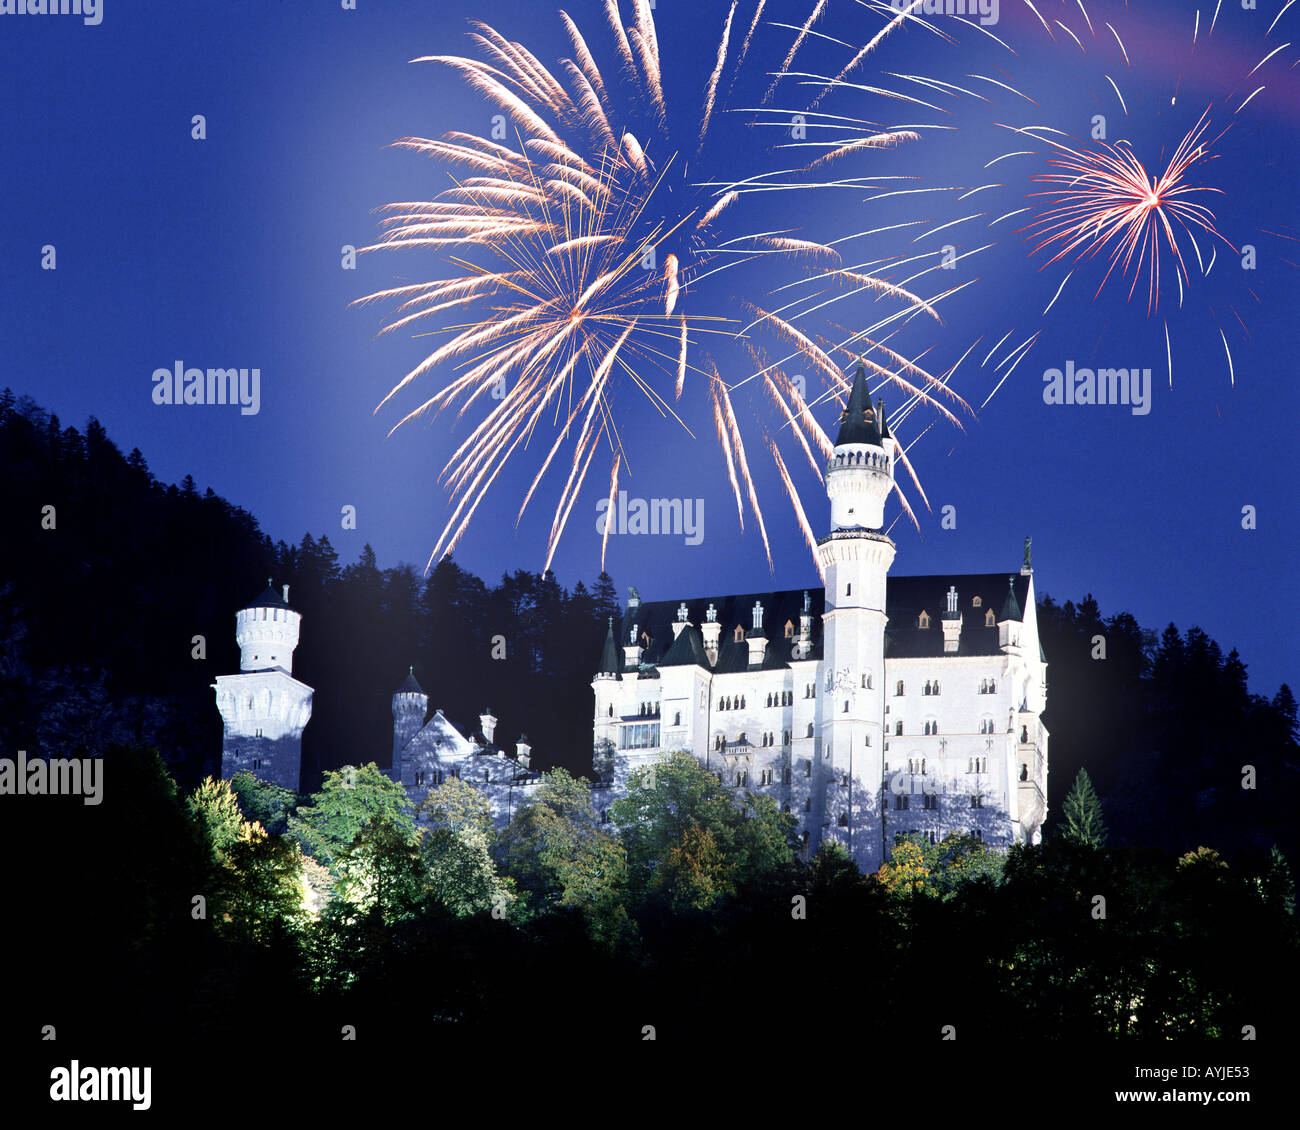 DE - Bayern: Feuerwerk über dem Schloss Neuschwanstein Stockfotografie -  Alamy